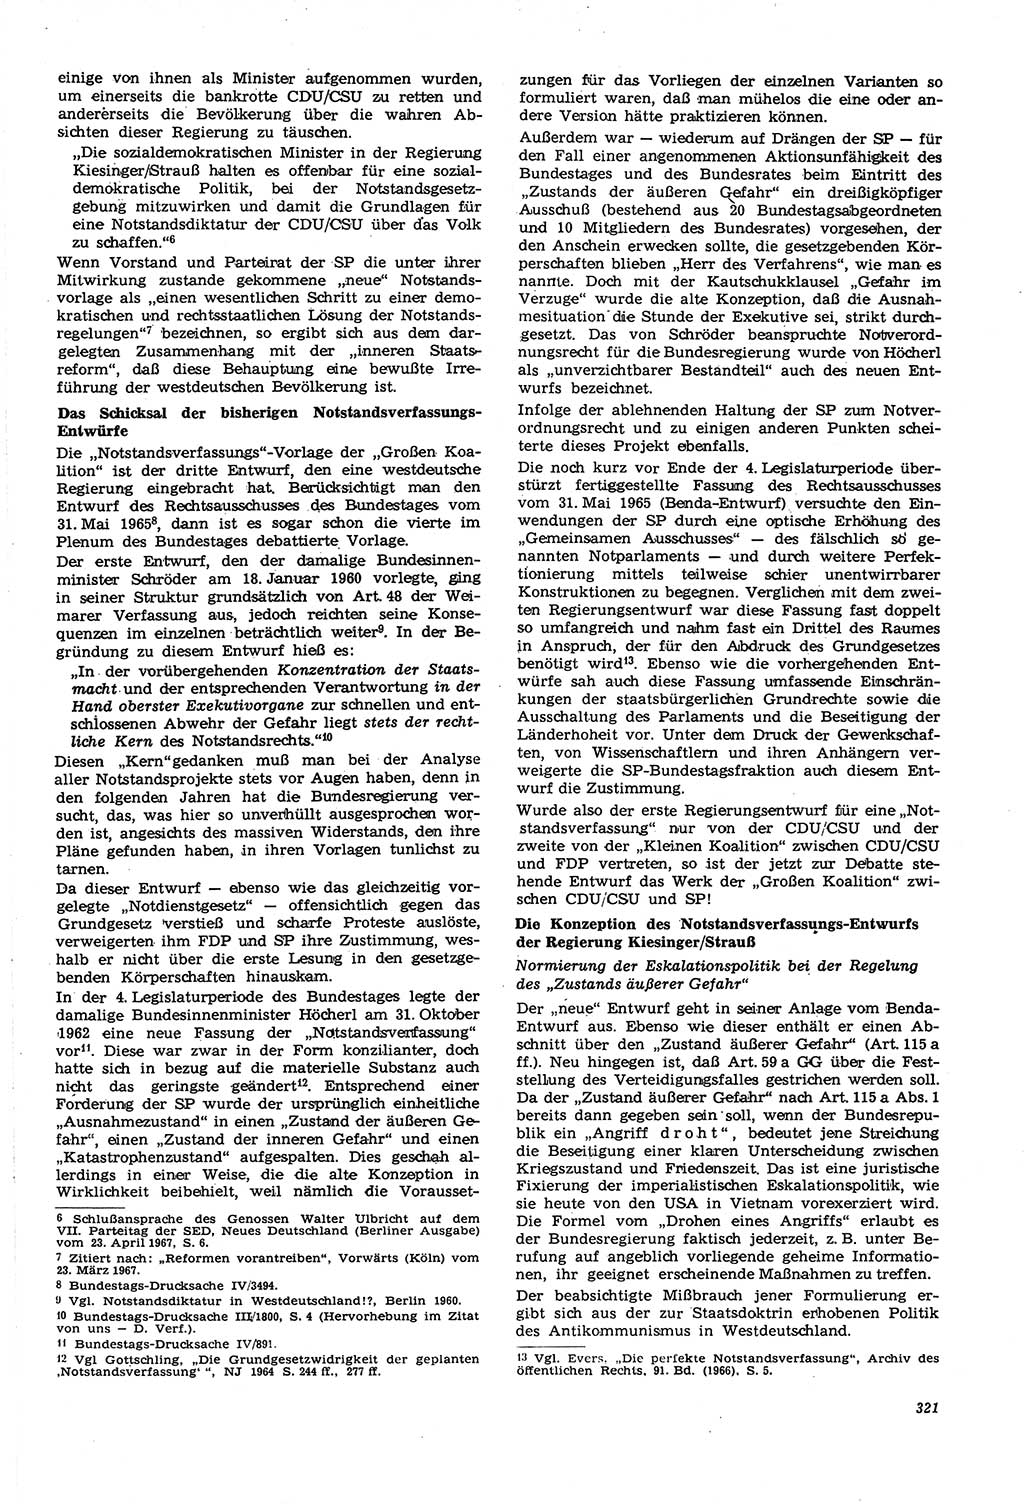 Neue Justiz (NJ), Zeitschrift für Recht und Rechtswissenschaft [Deutsche Demokratische Republik (DDR)], 21. Jahrgang 1967, Seite 321 (NJ DDR 1967, S. 321)